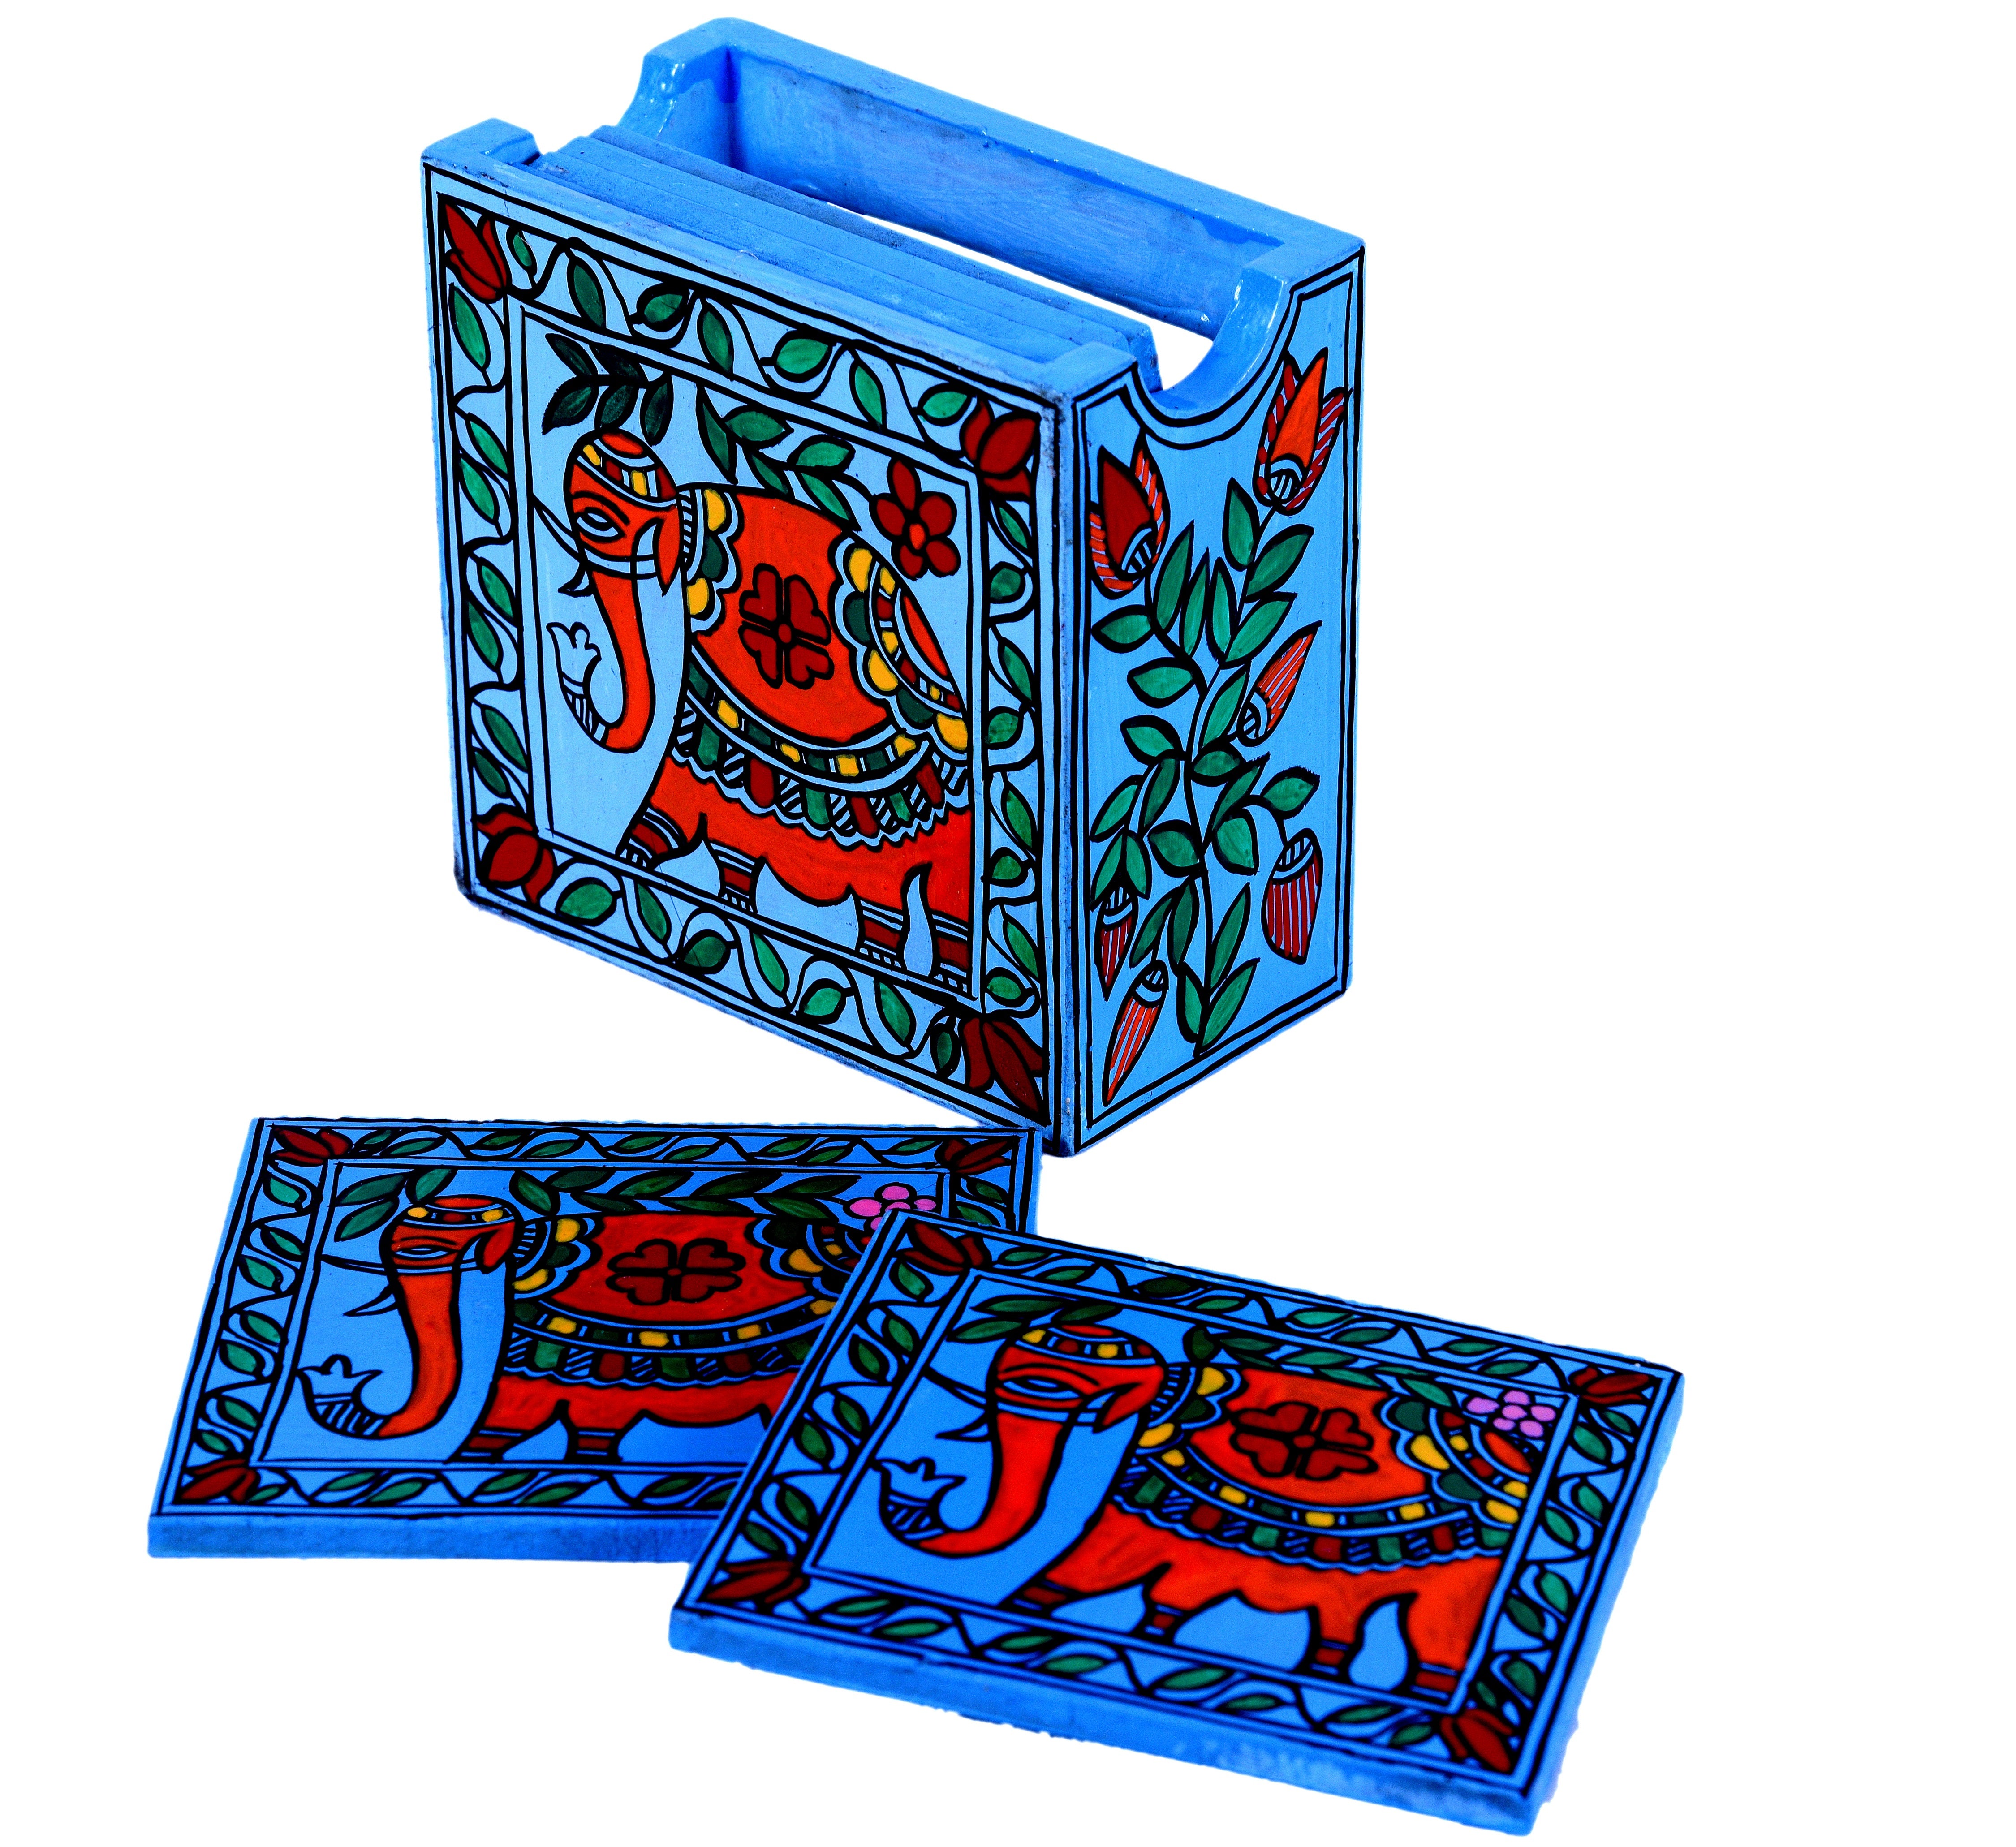 Hand Painted Madhubani Coasters set of 6 with holder - Blue Elephant